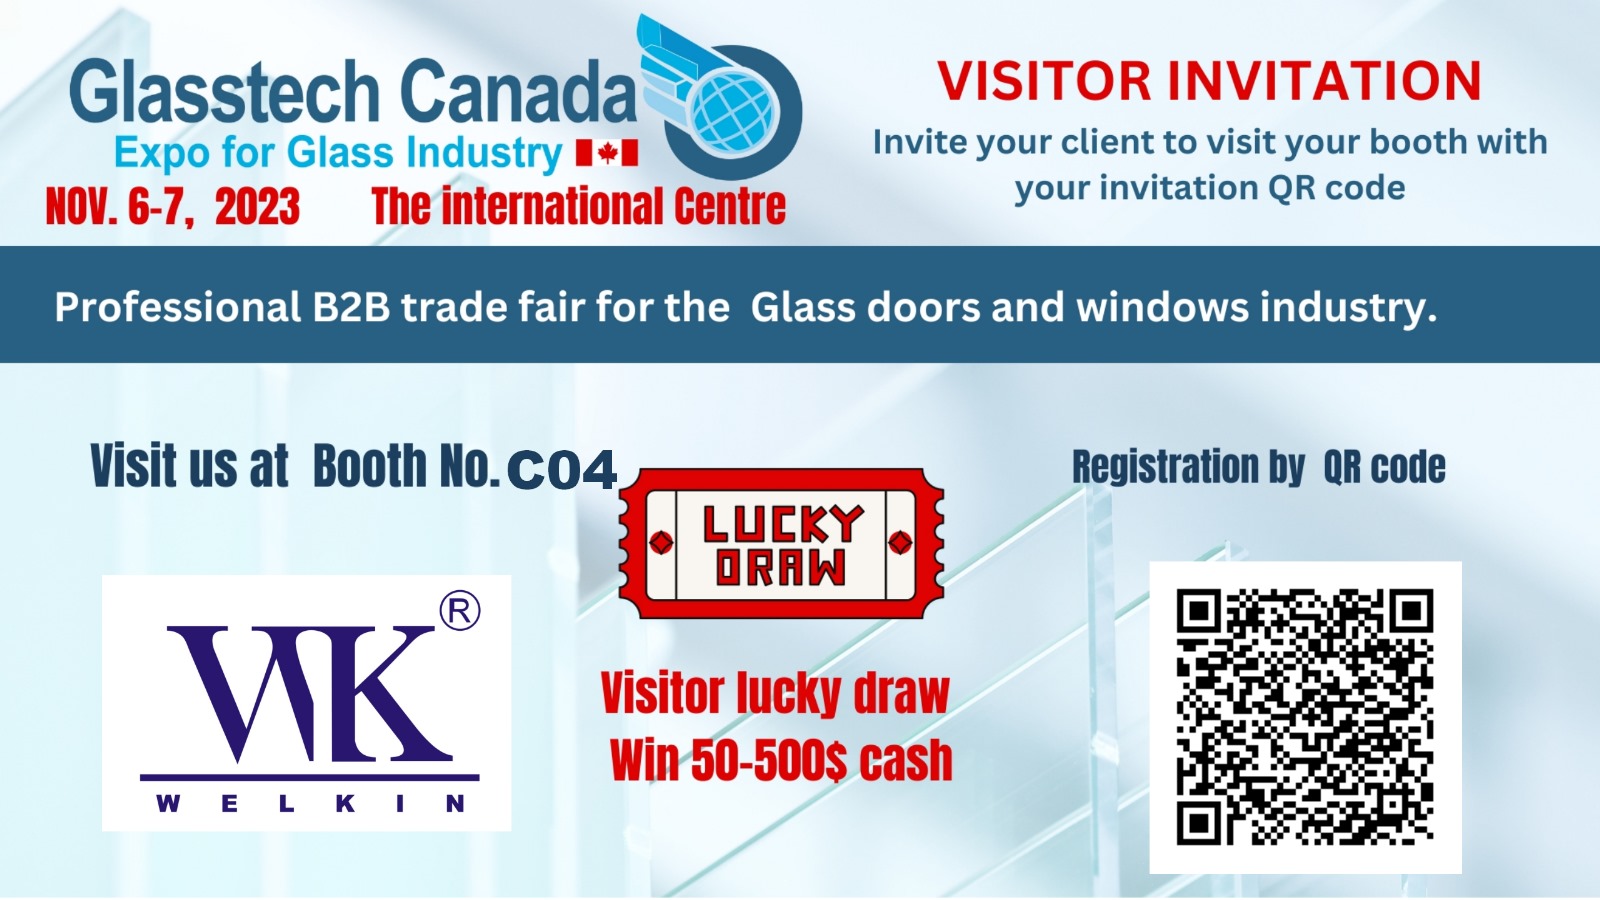 Glasstech Canada Nov.6-7, 2023